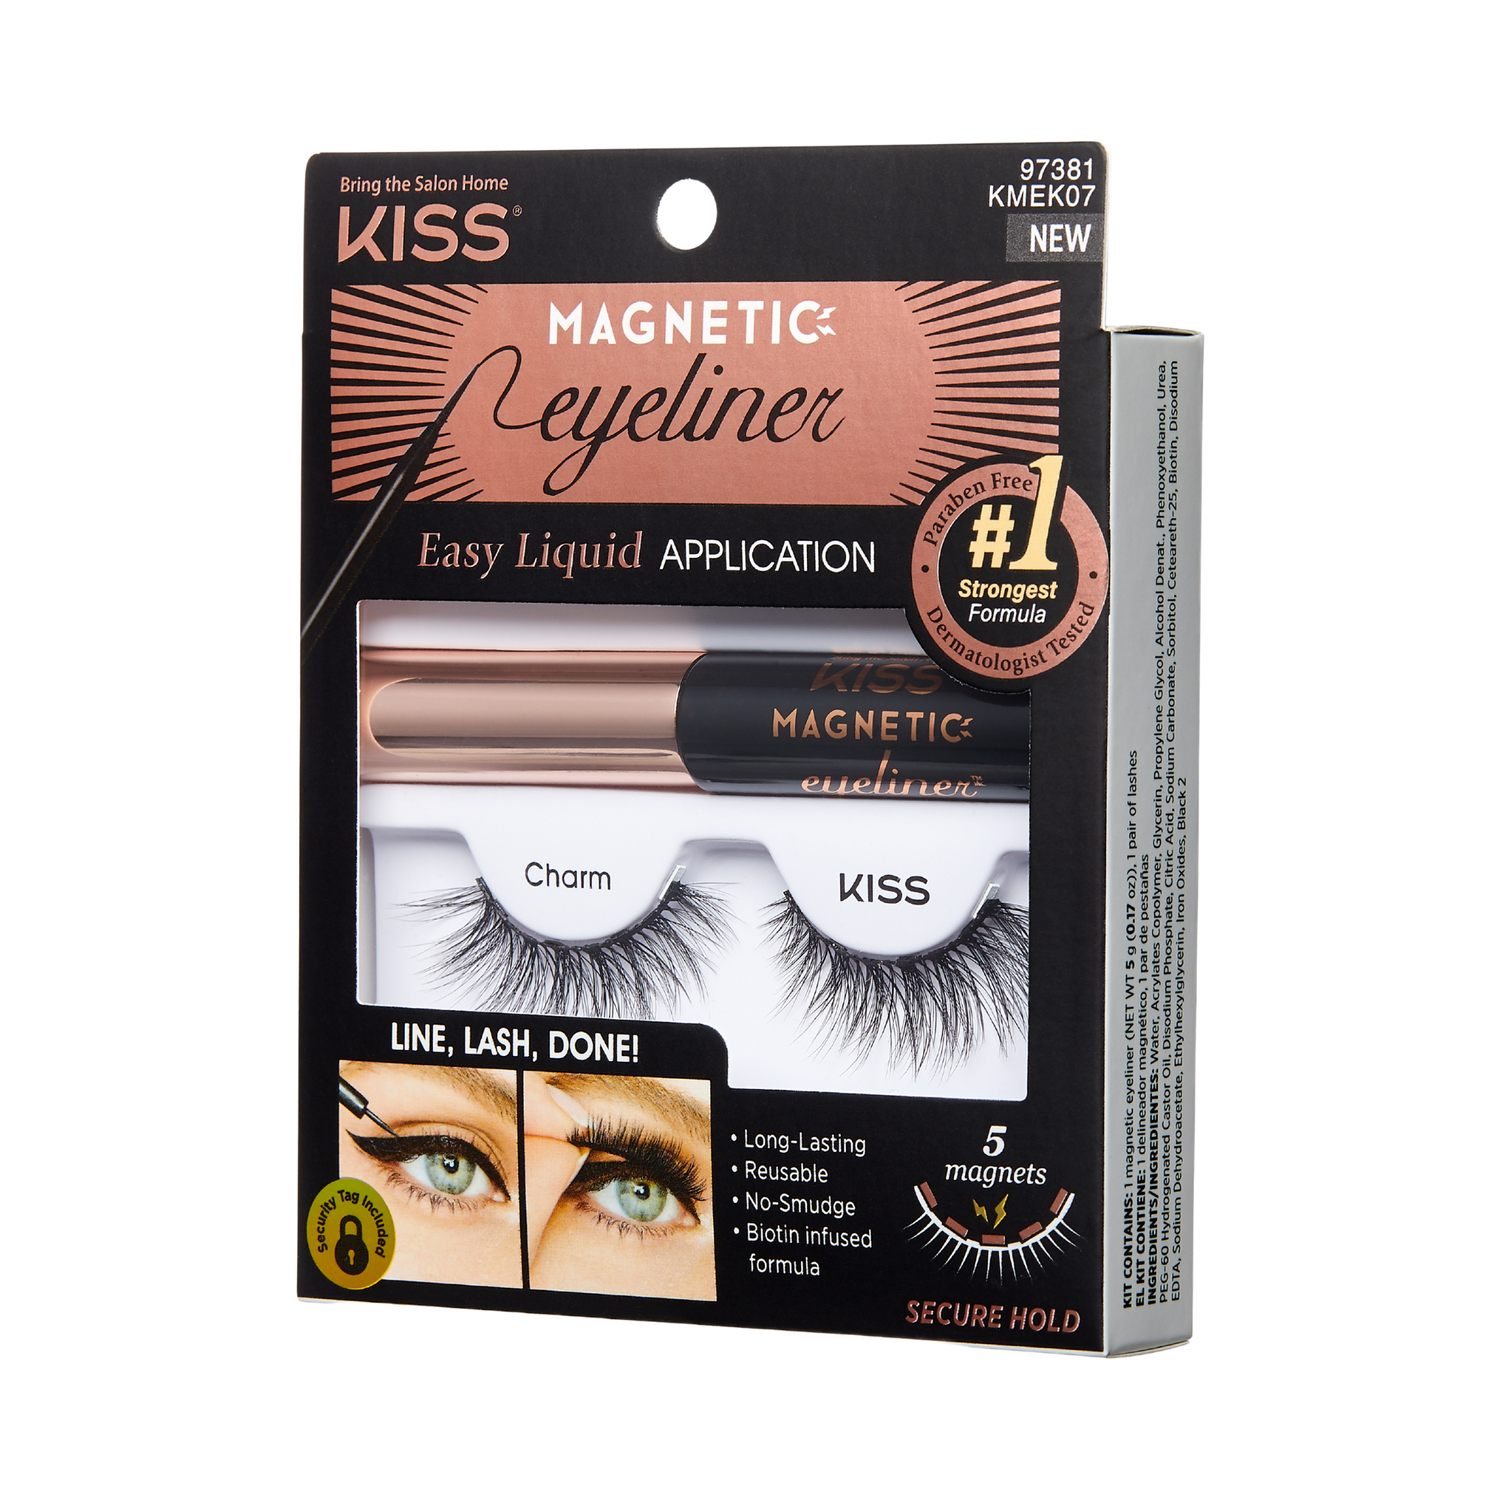 KISS Magnetic Eyeliner &amp; Magnetic Eyelashes Ultra-Strong Flexiband False Eyelashes Kit - Charm - KISS USA